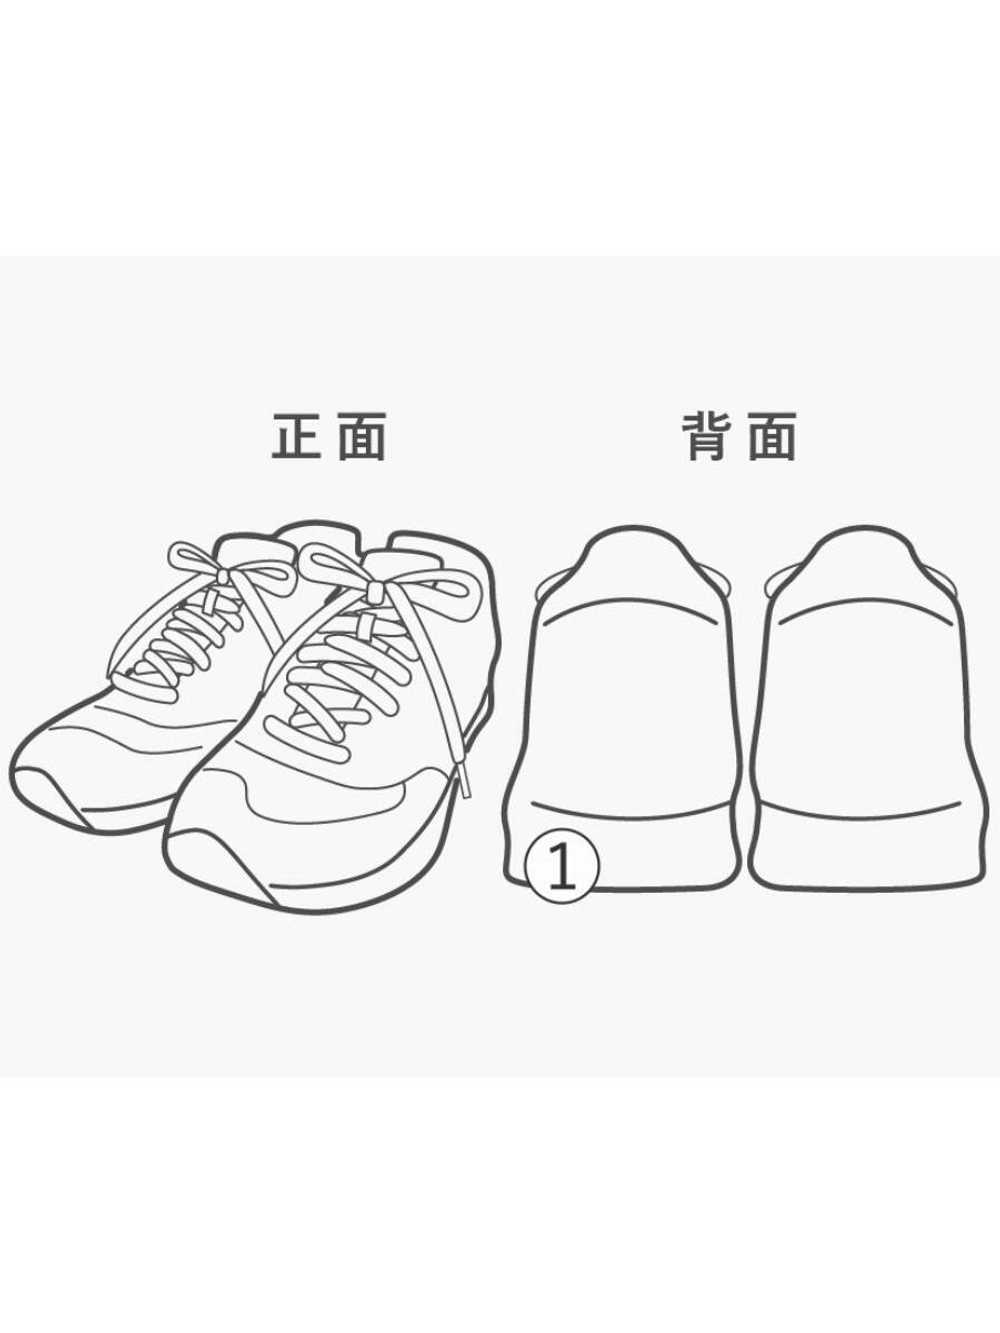 Paraboot Sandals/40/Blk/Pacific/Gurkha Shoes BUY47 - image 7